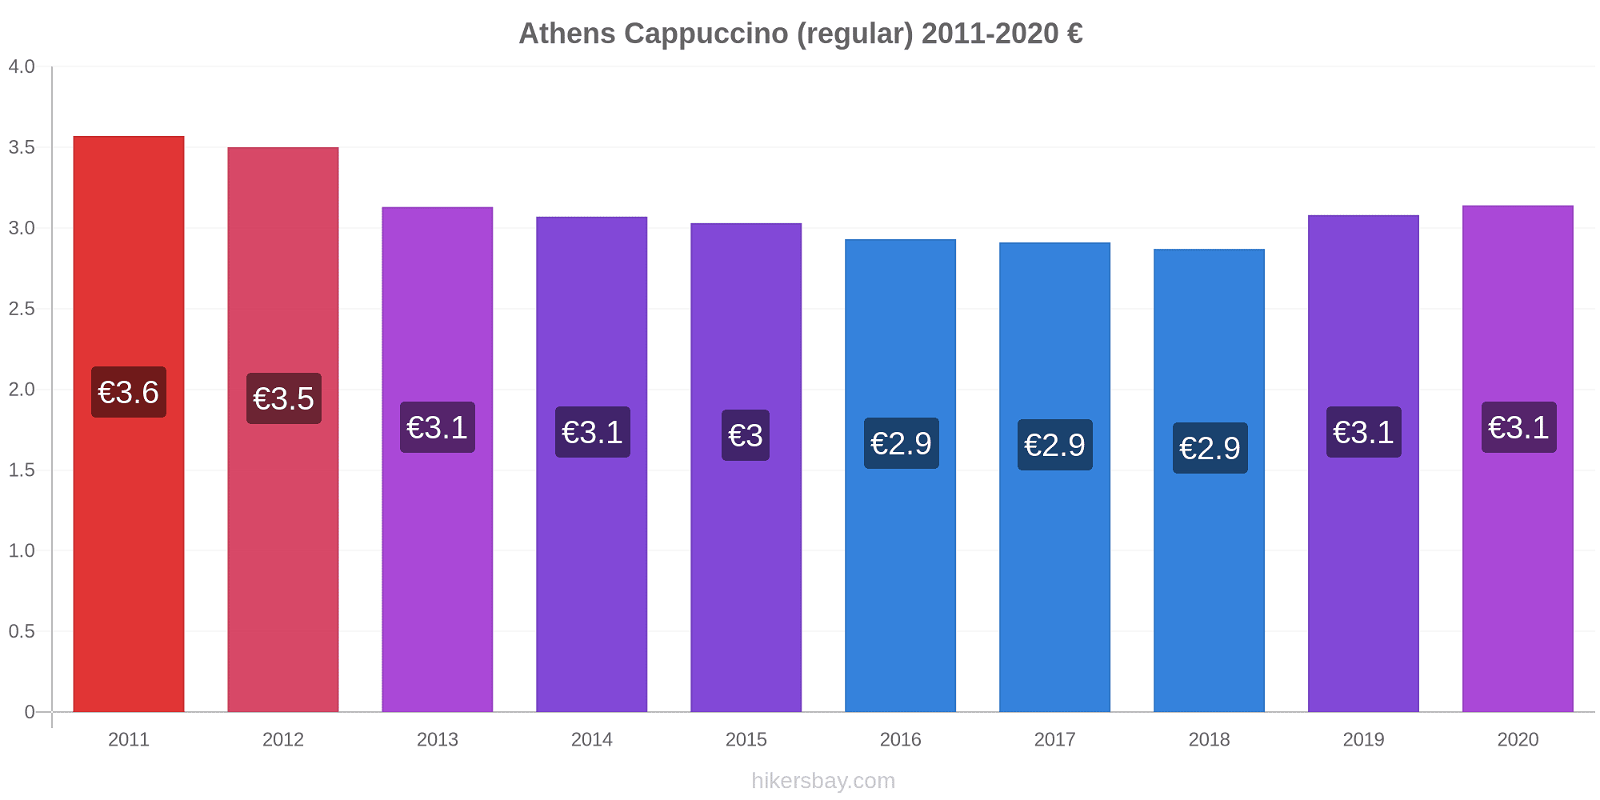 Athens price changes Cappuccino (regular) hikersbay.com